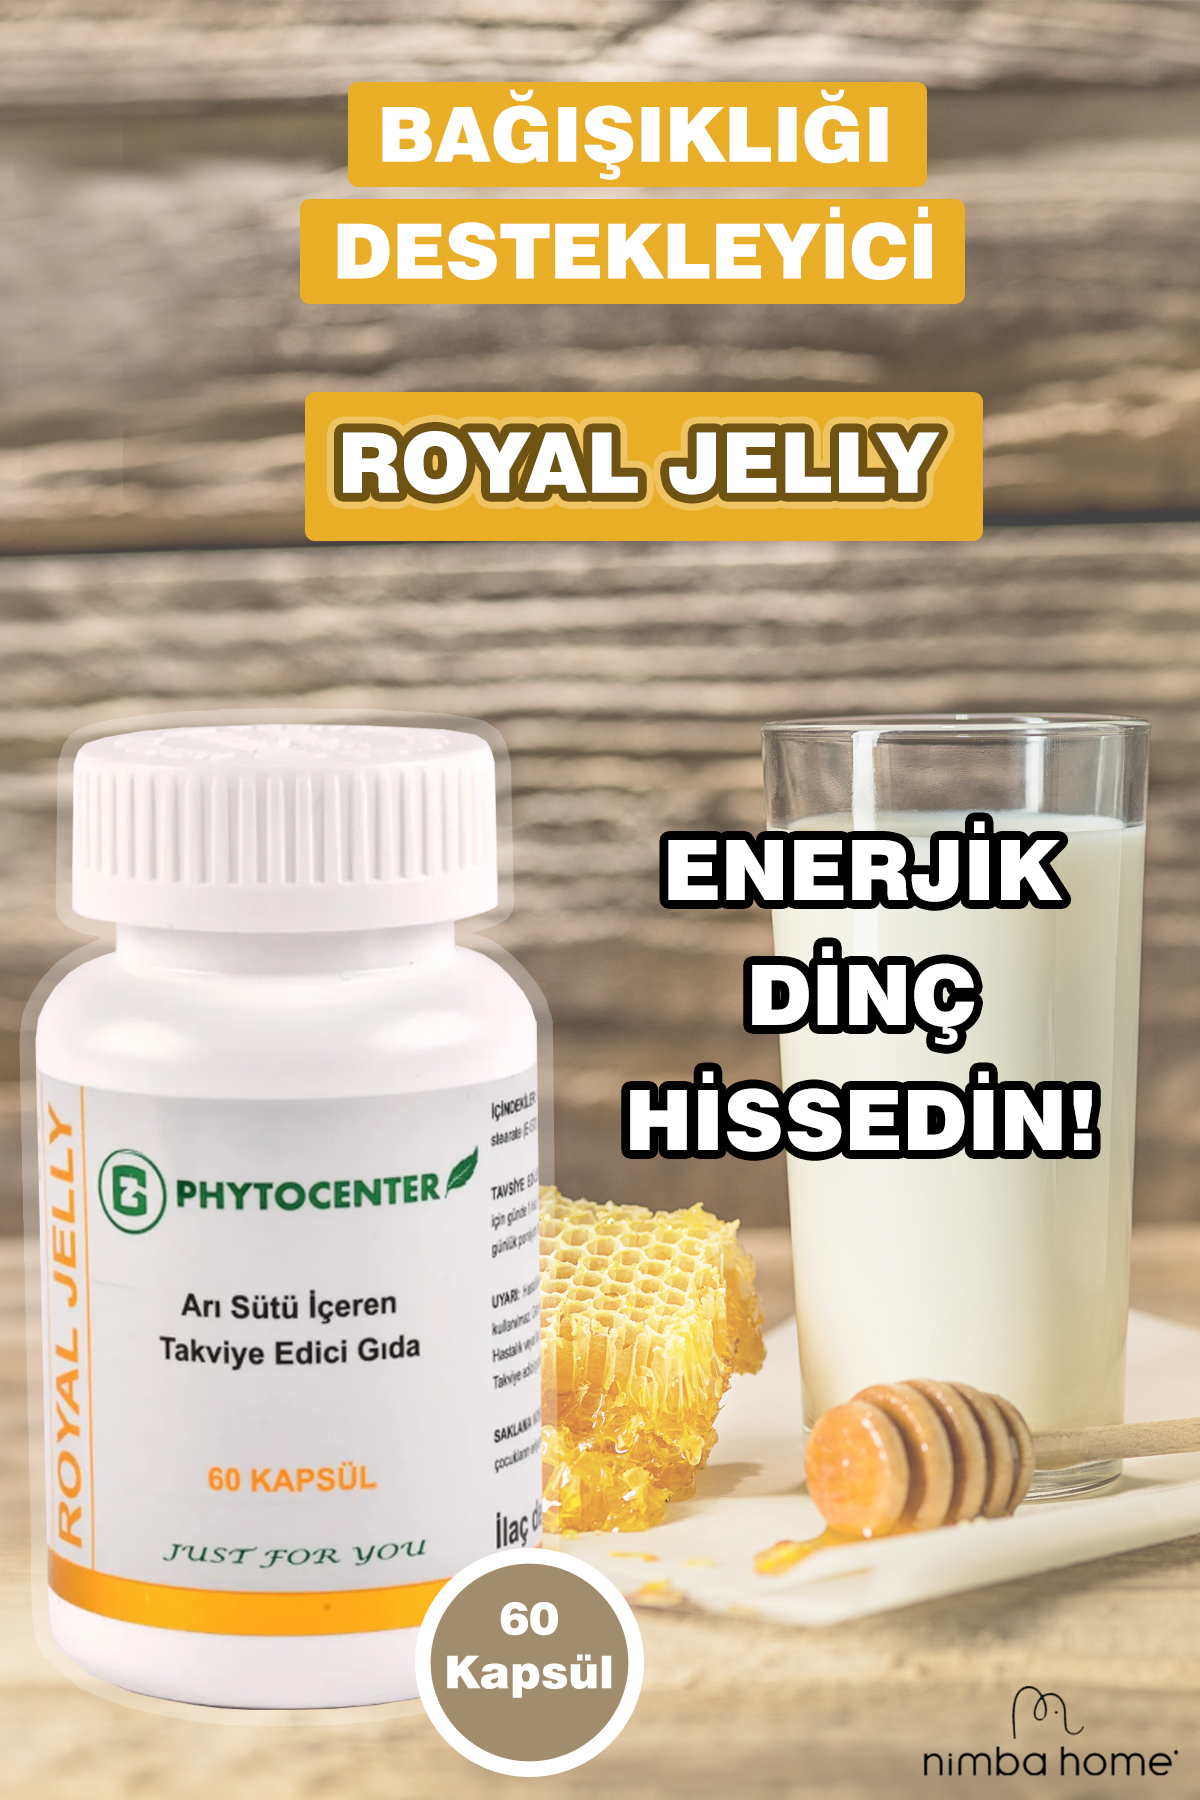 Royal Jelly 60 Kapsül - Arı Sütü İçeren Takviye Edici Gıda